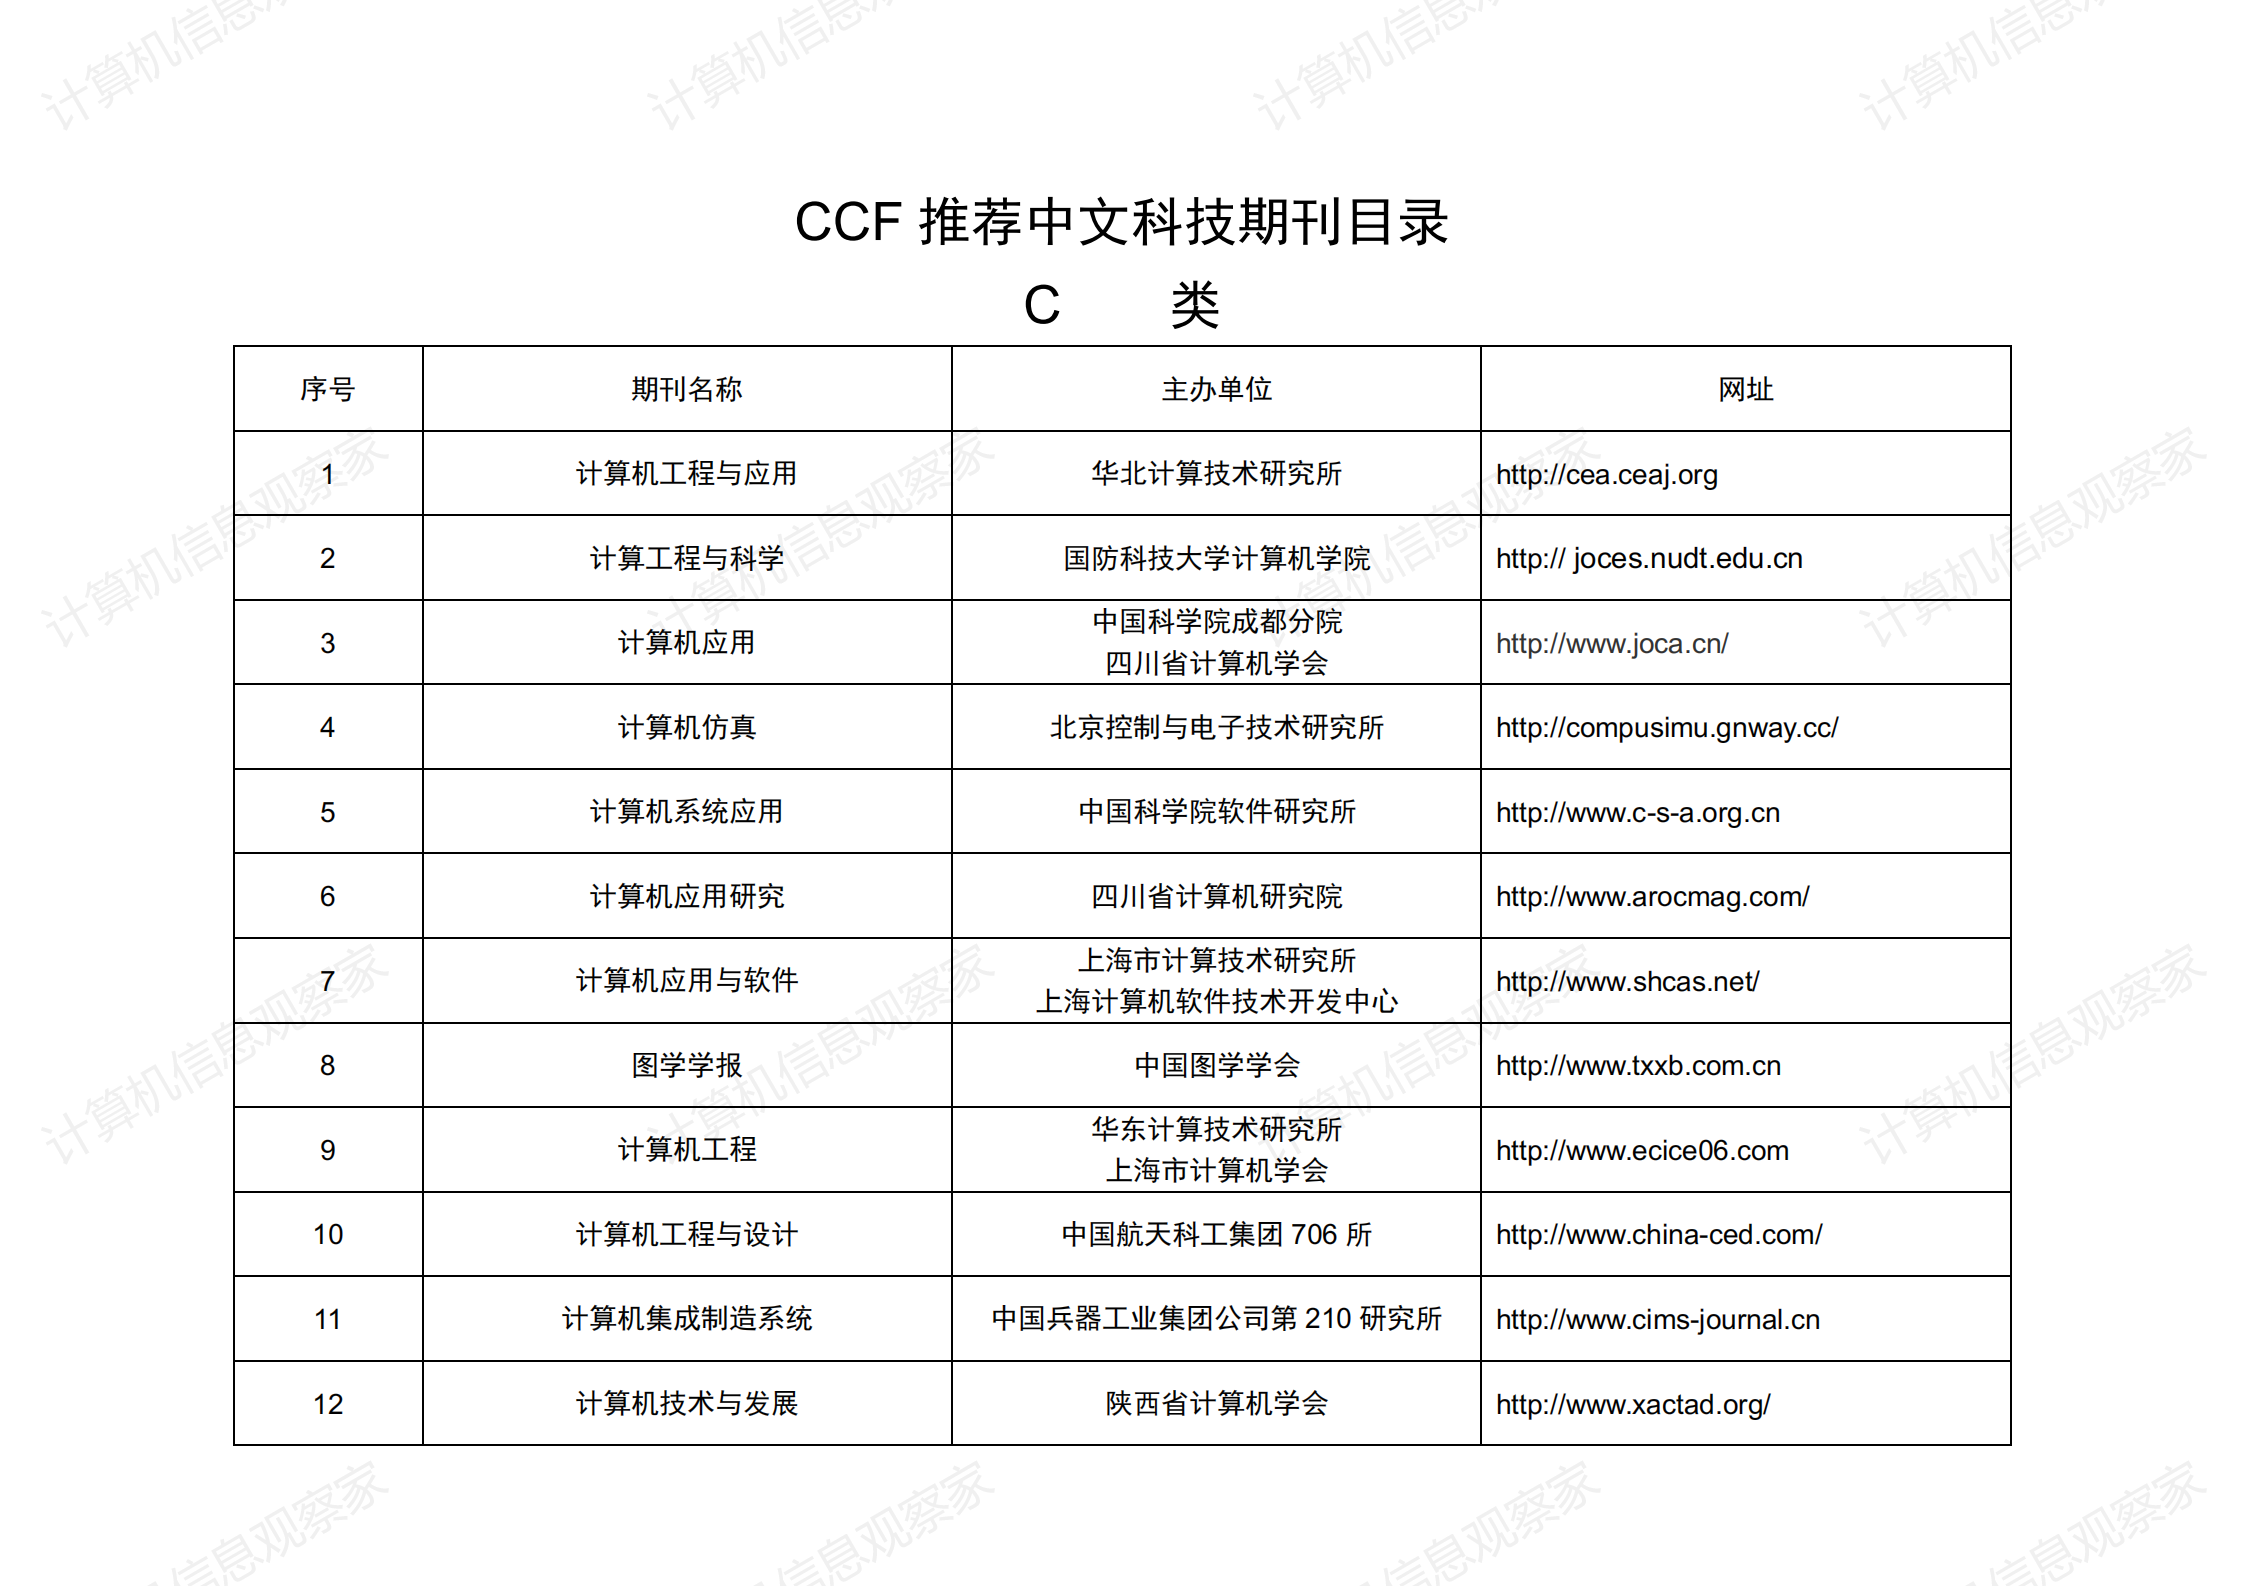 中国计算机学会推荐中文科技期刊目录_03.png